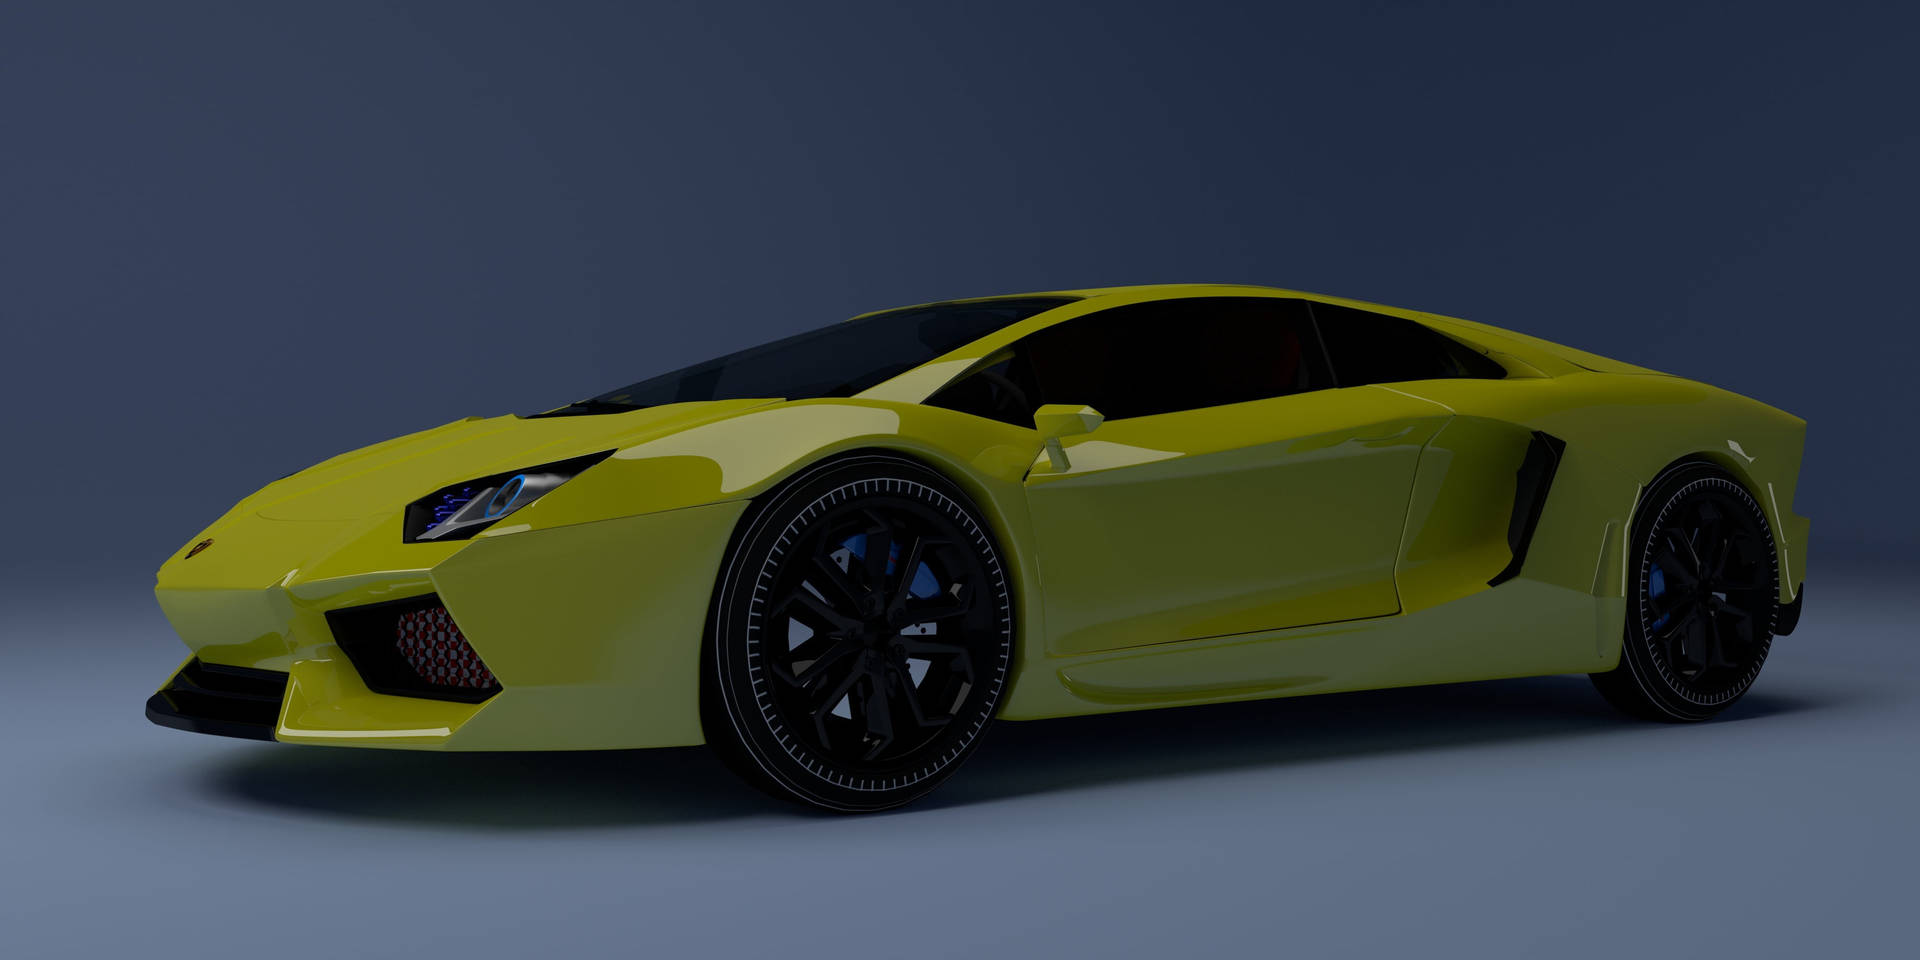 Lamborghiniamarillo En 3d Para Fondo De Pantalla De Computadora O Móvil. Fondo de pantalla